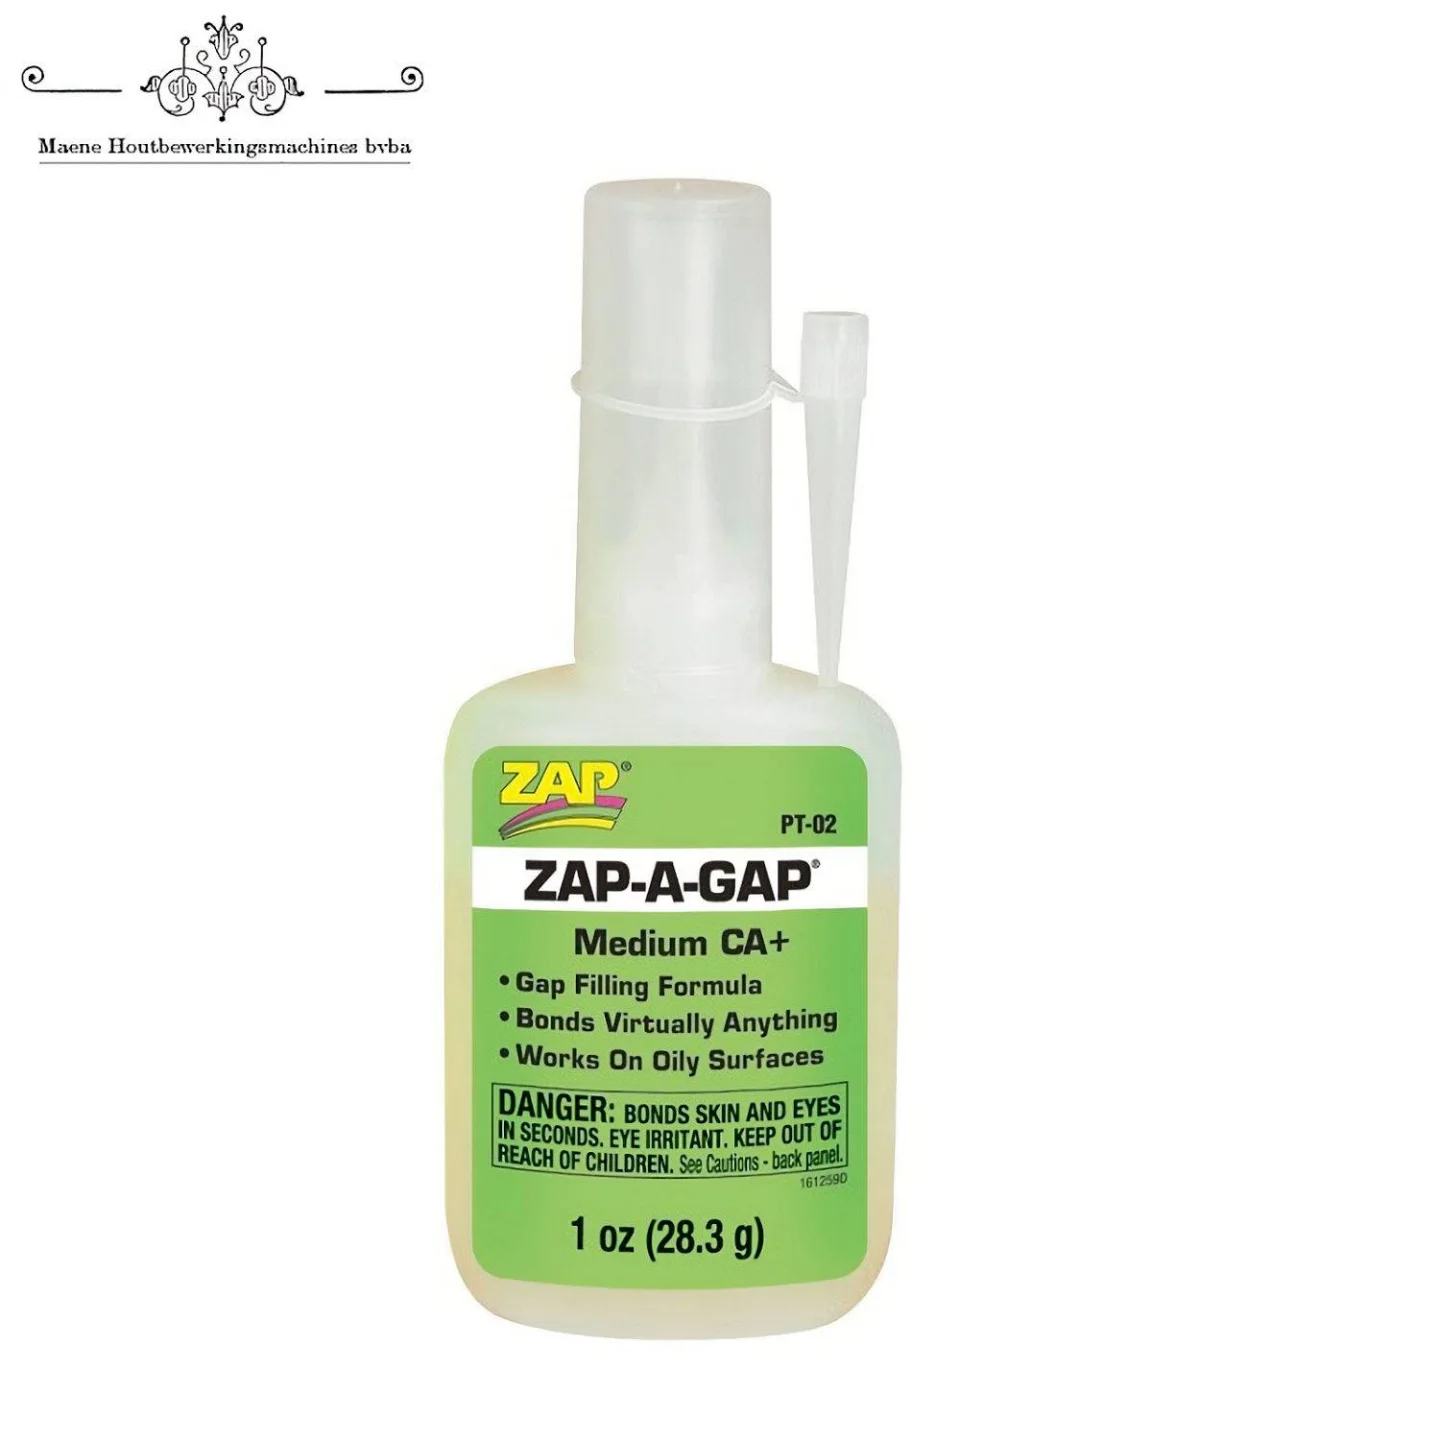 zap-a-gap-medium-CA-28gr.